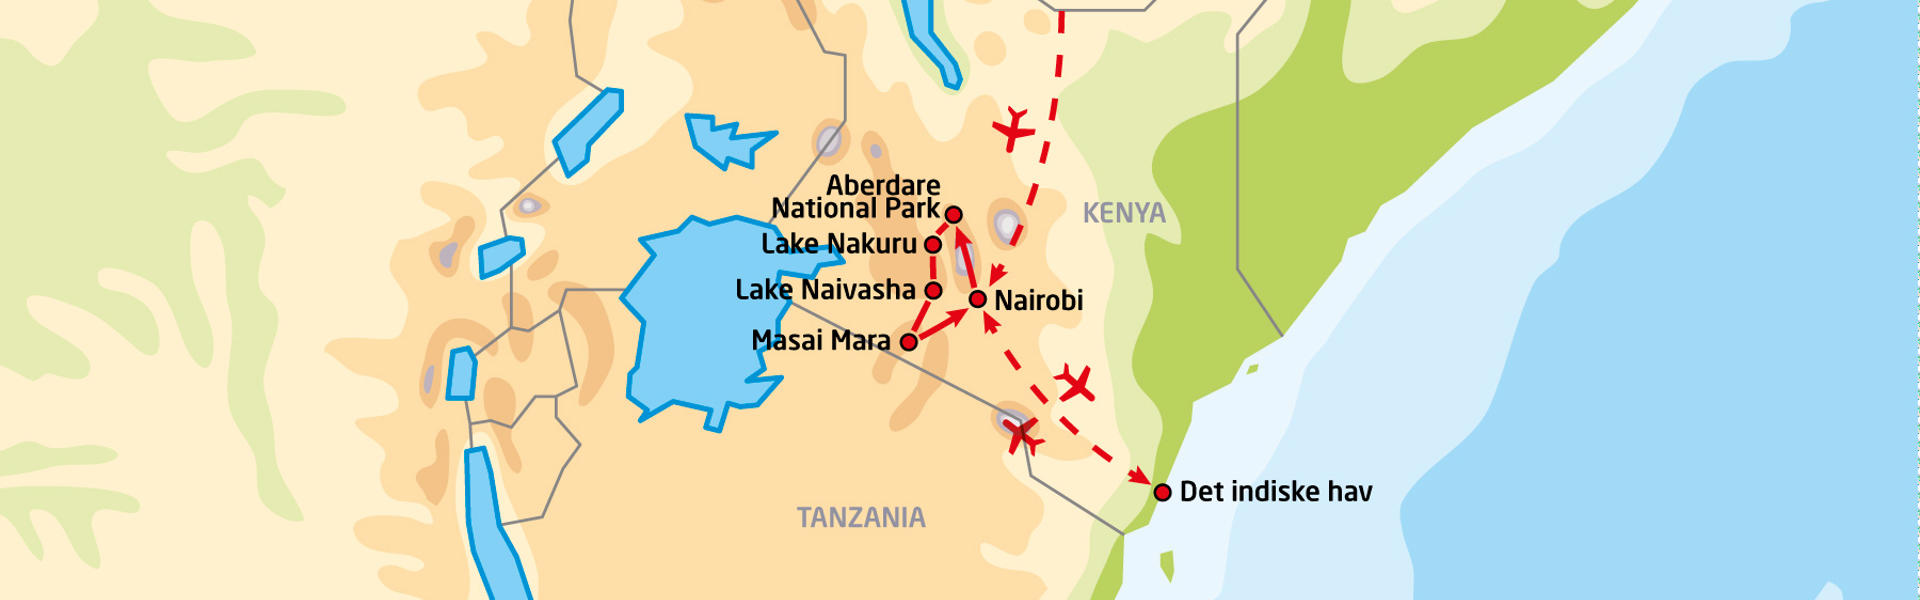 Thorn Tree Safari i Kenya og badeferie ved Det indiske hav | Reiserute